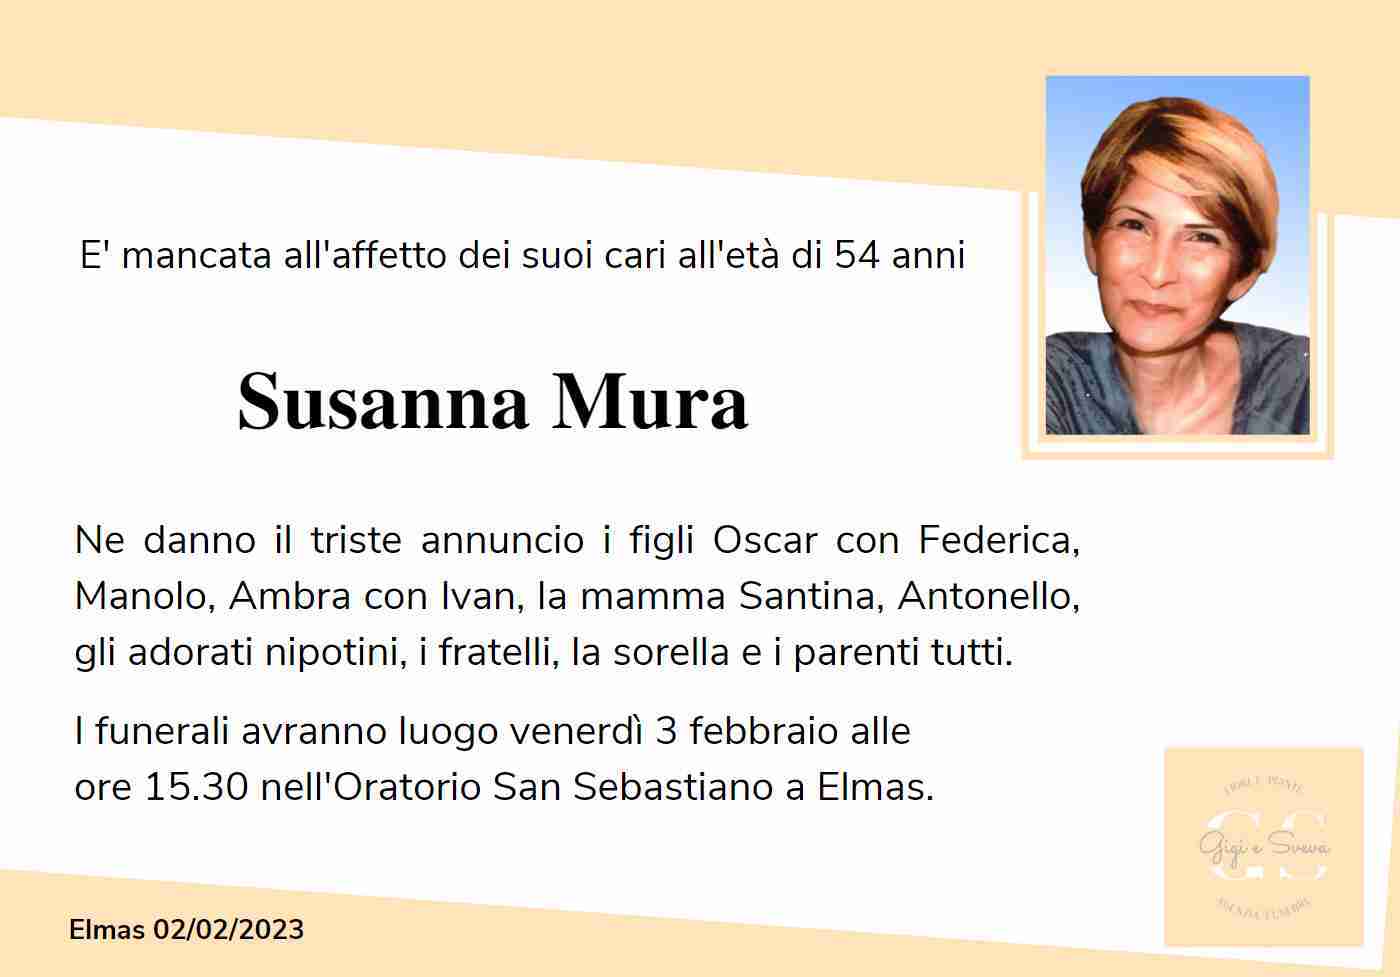 Susanna Mura